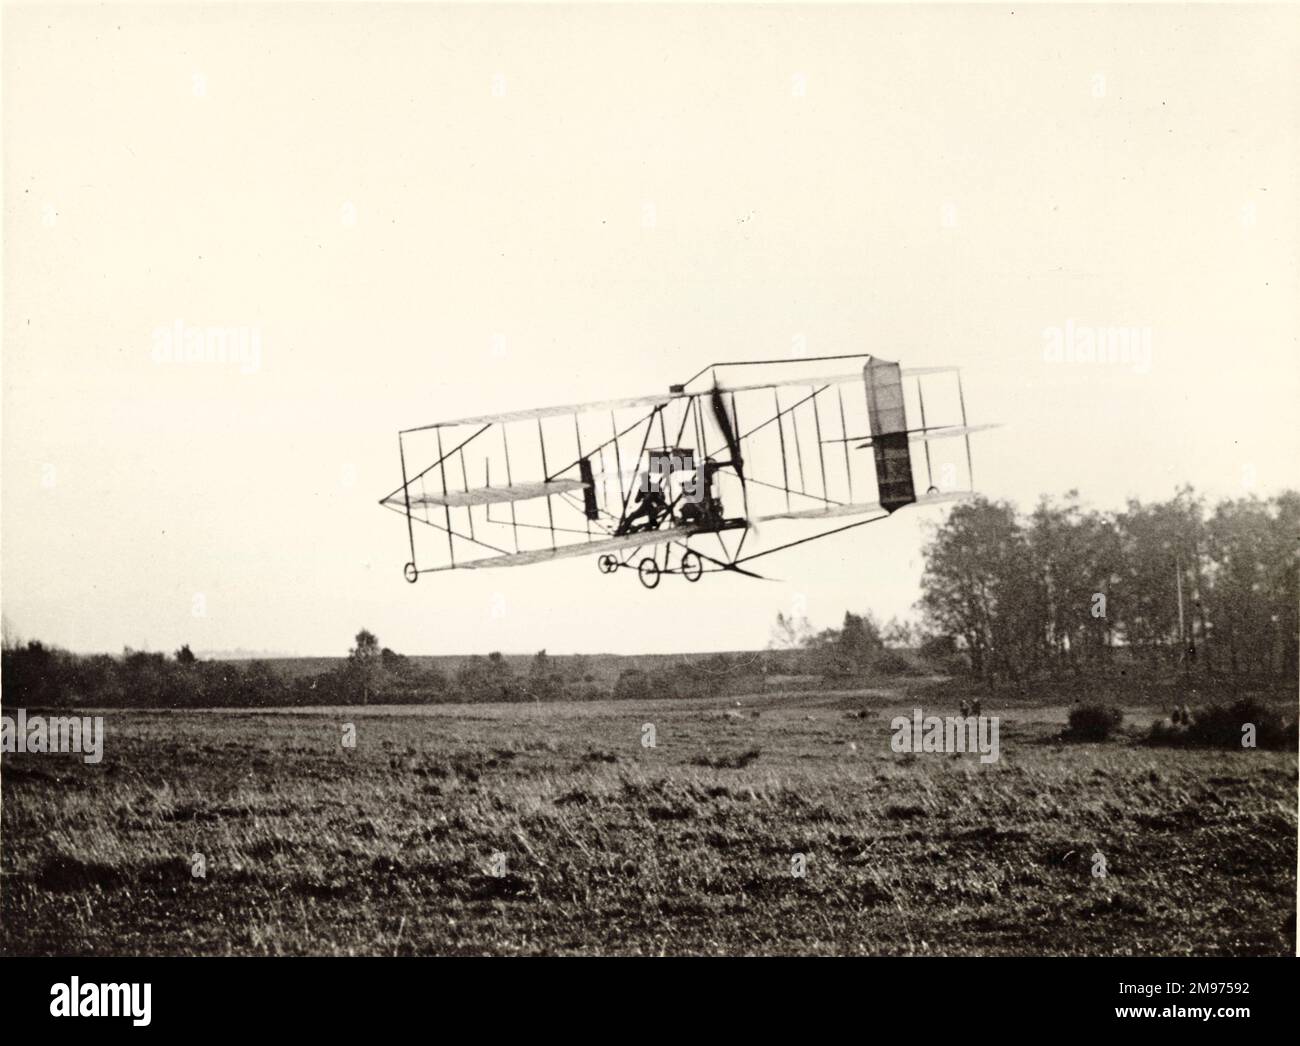 Cody Biplane Nr. 2, der Michelin Cup Biplane, in der Luft. Stockfoto